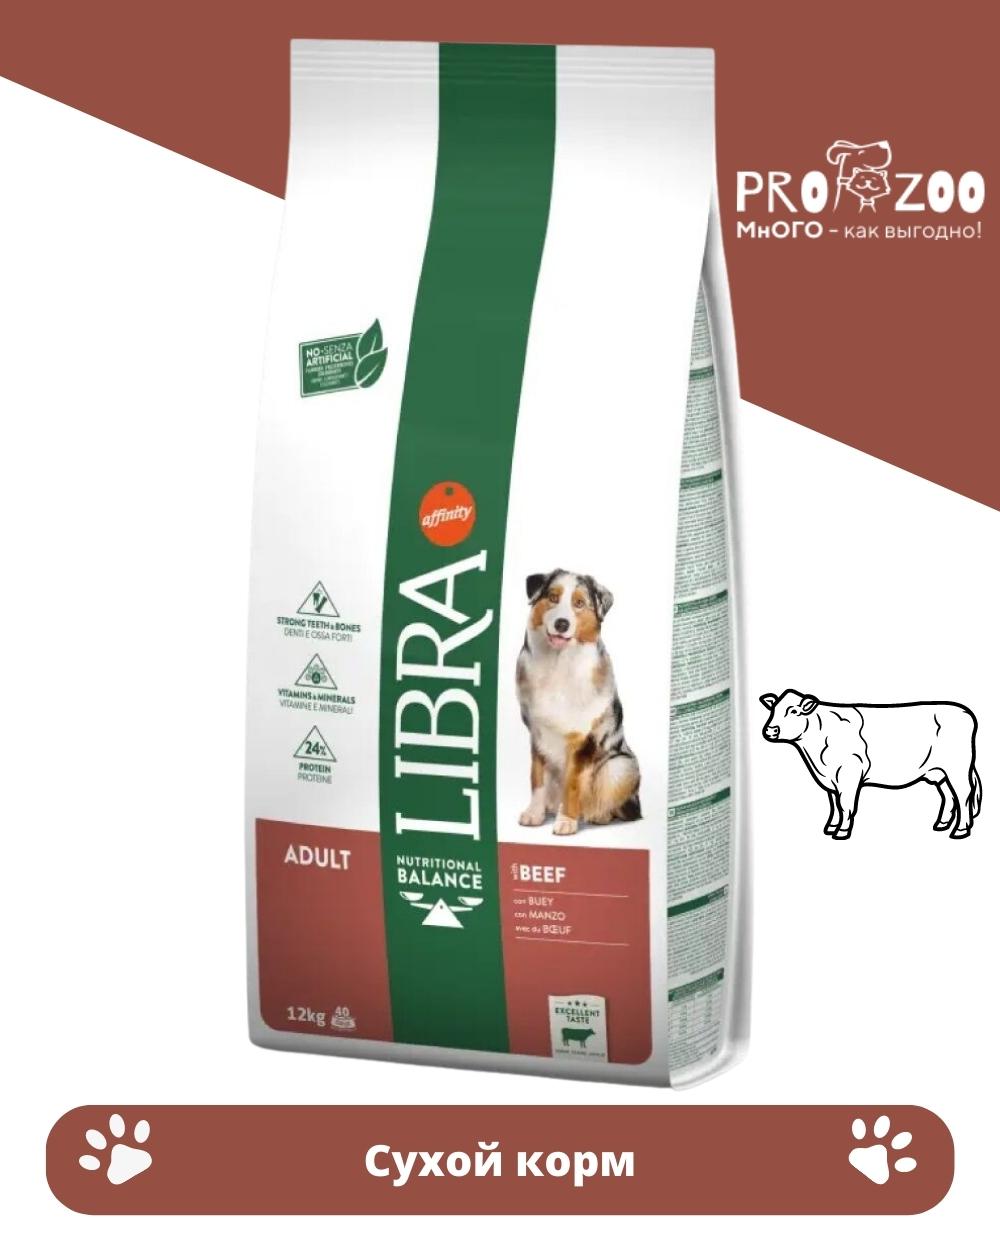 Сухой корм LIBRA DOG для взрослых собак всех пород, говядина, 12 кг 1